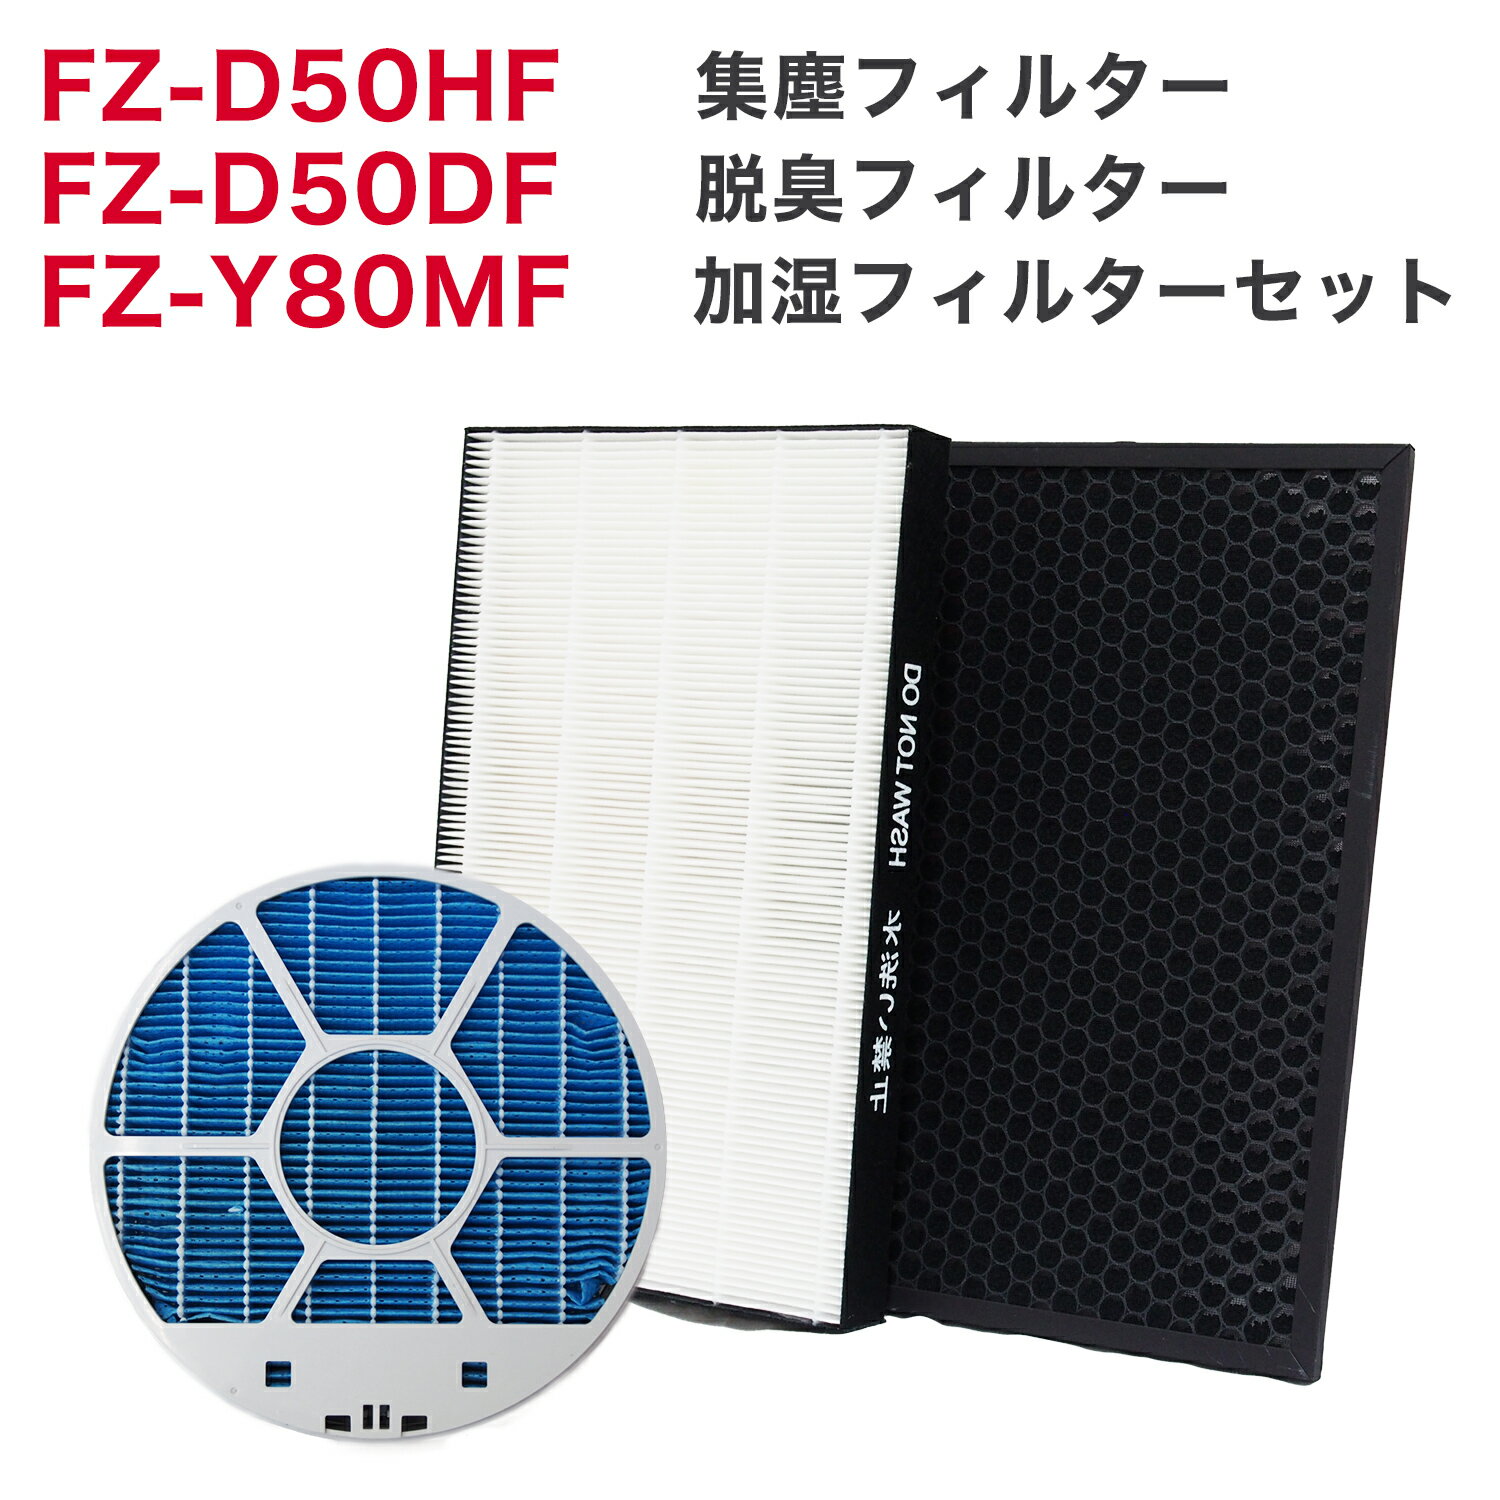 空気清浄機用アクセサリー, 交換フィルター 3 FZ-D50HF FZ-D50DF FZ-Y80MF fz d50hf FZD50DF FZ-F50DF (2802140115) FZY80MF 